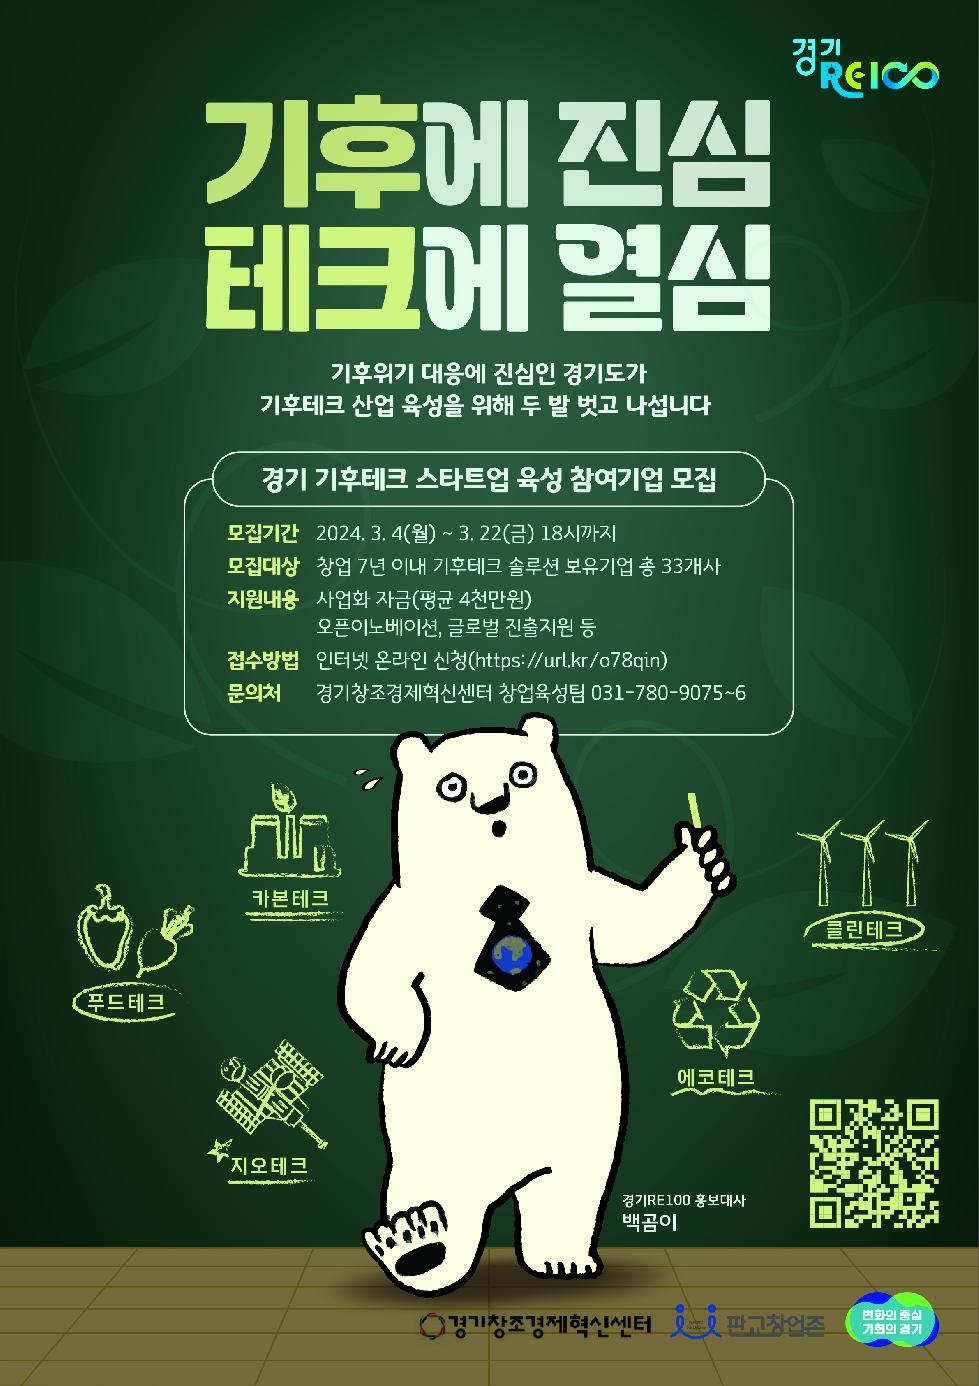 경기도, 신성장동력 ‘기후테크 스타트업’ 발굴·육성 주도